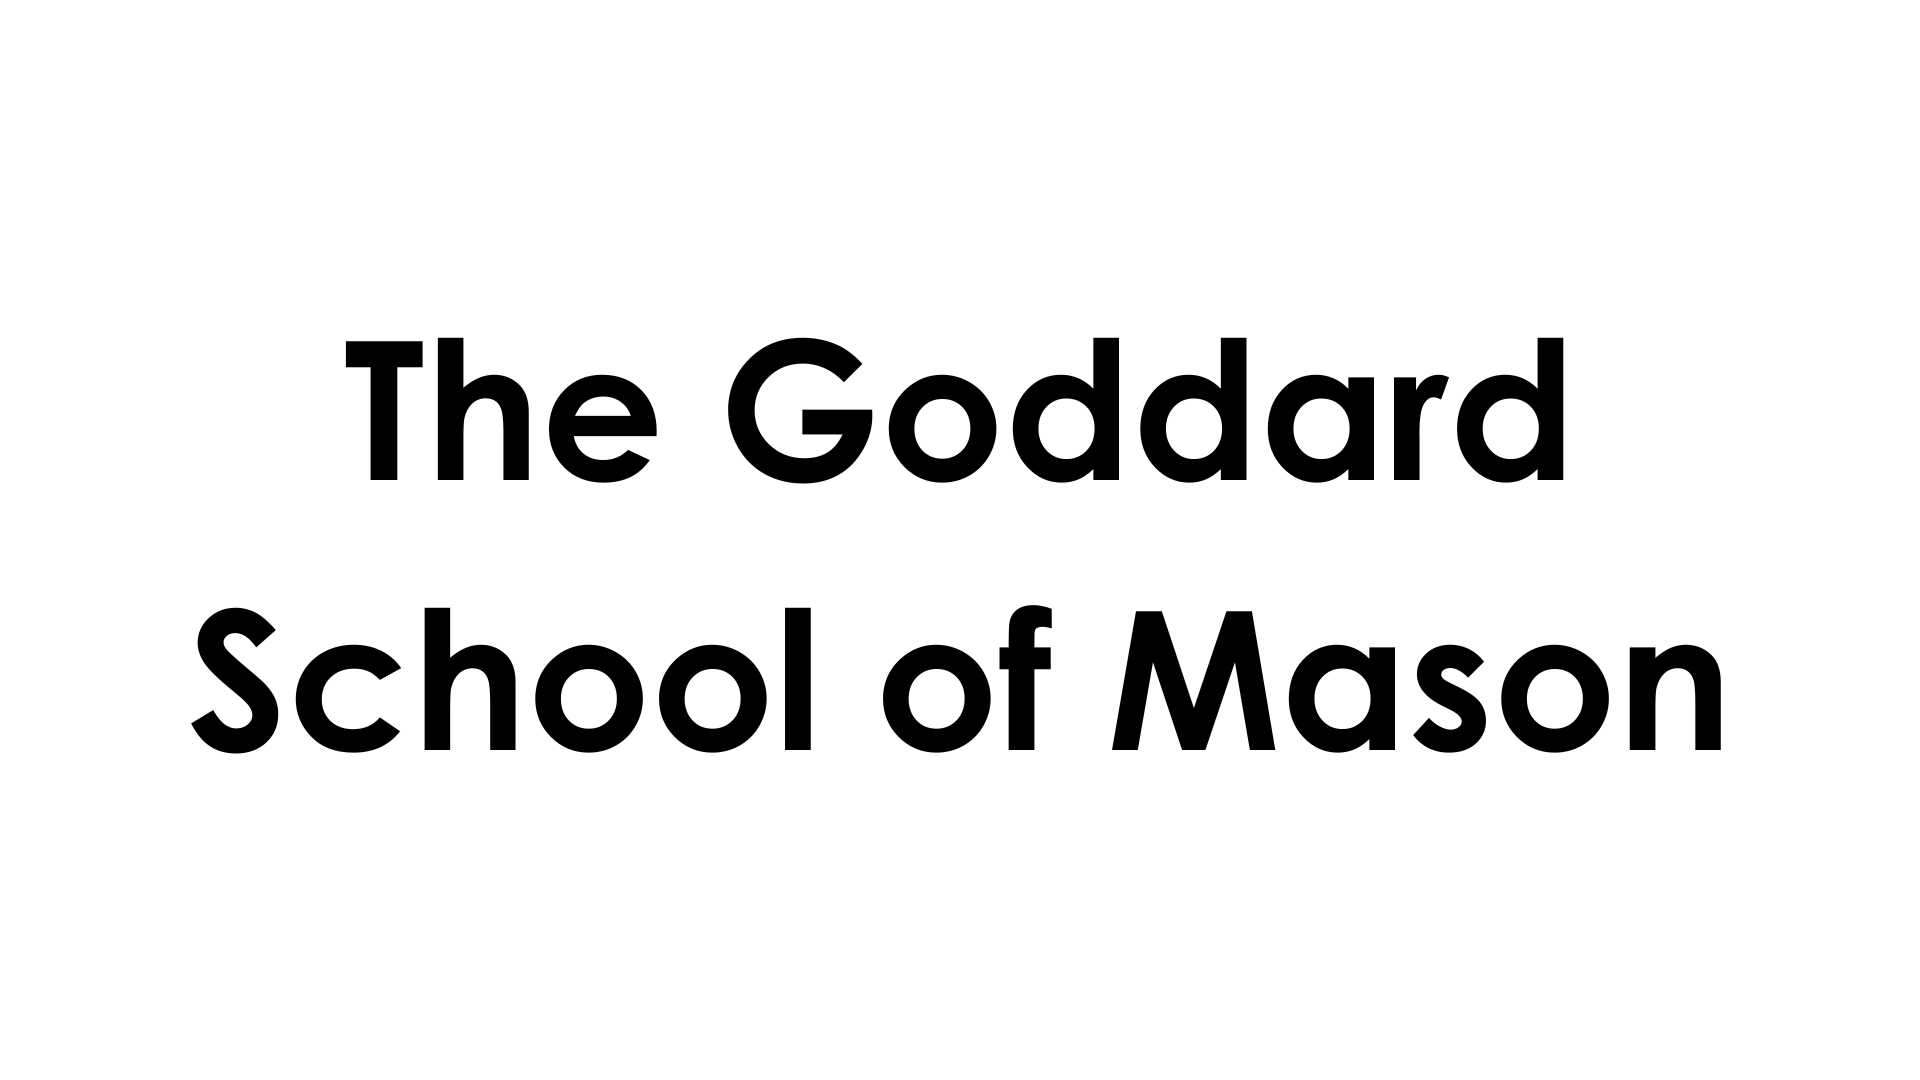 The Goddard School of Mason